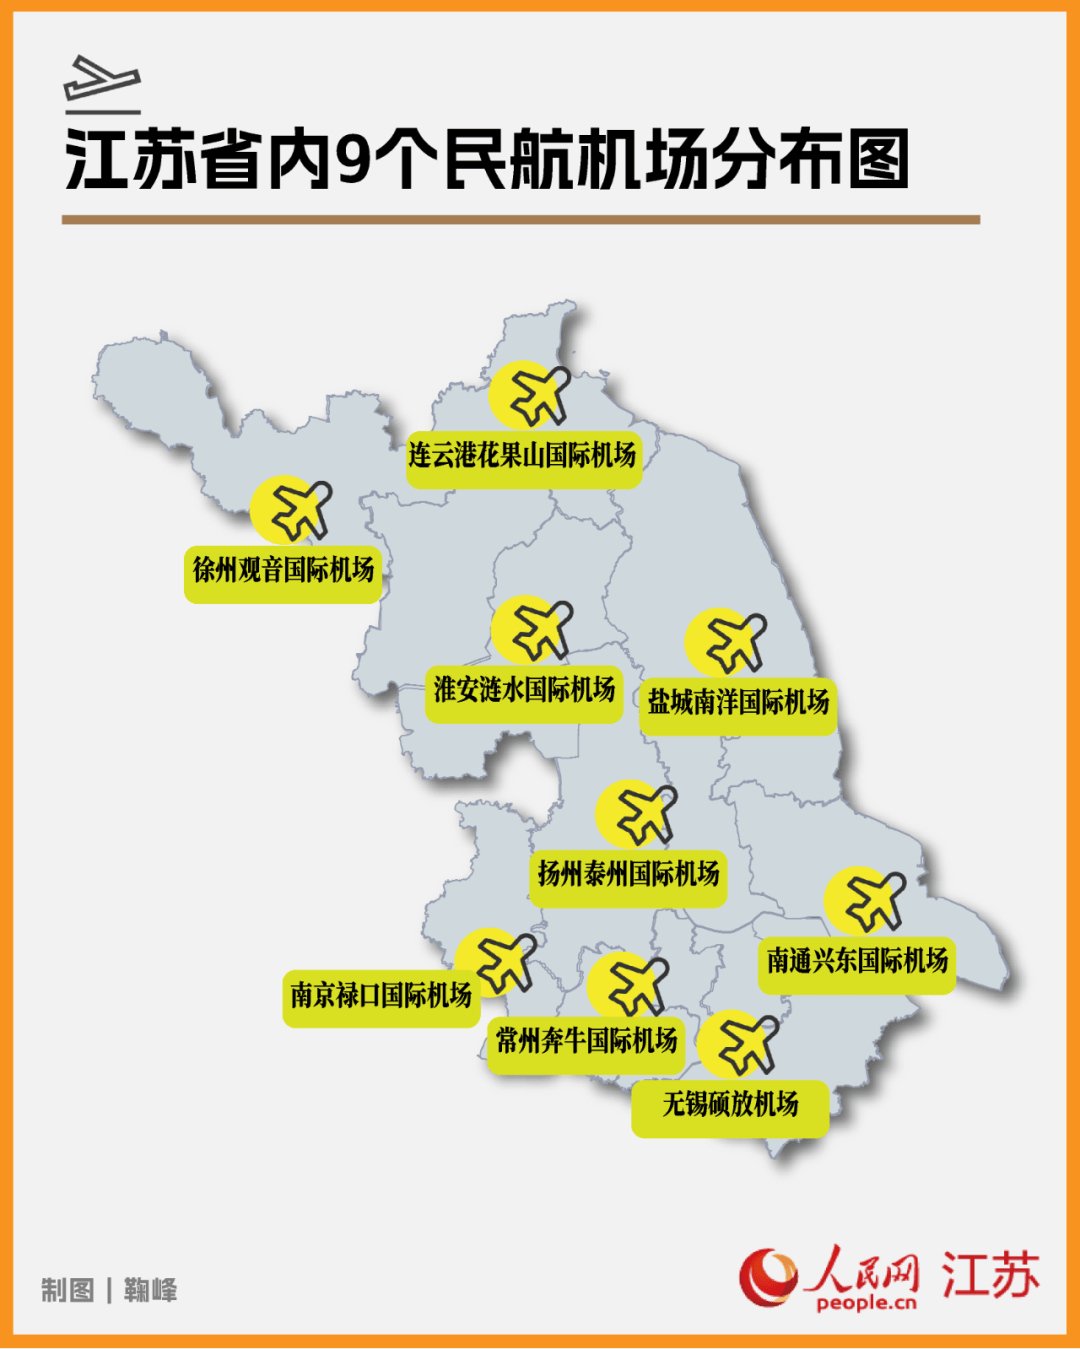 目前江苏省约10万平方公里面积内,目前分布着9个民航机场